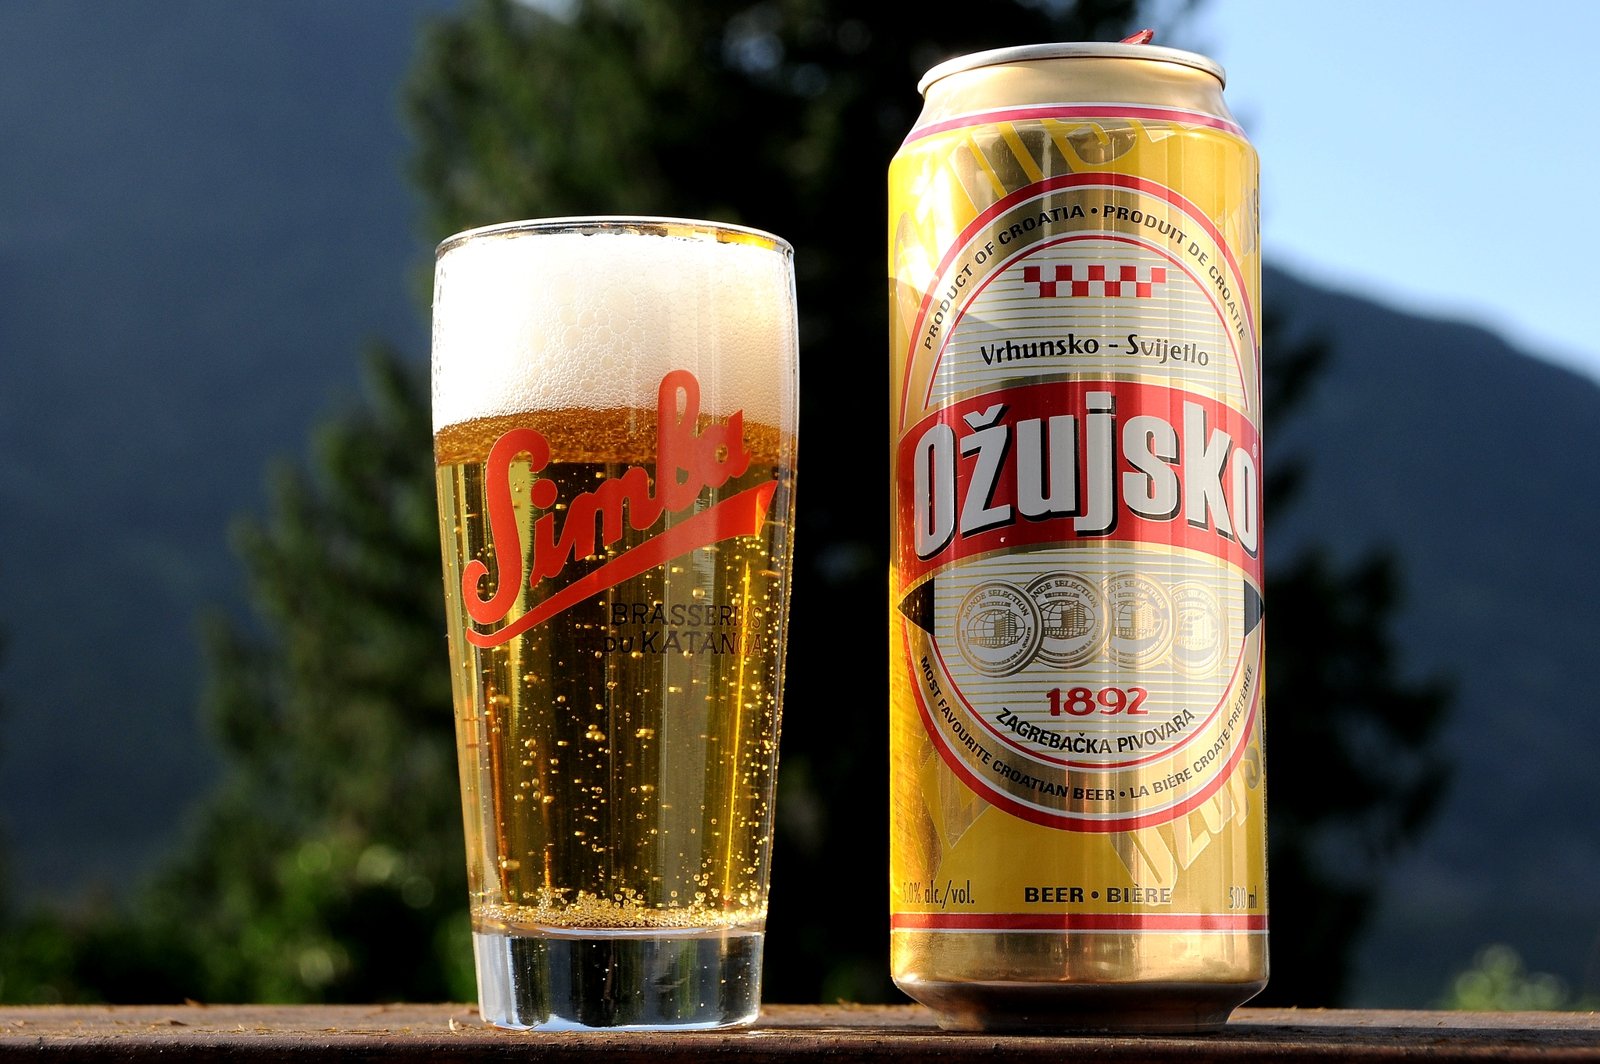 Как попробовать пиво Ожуйско в Загребе